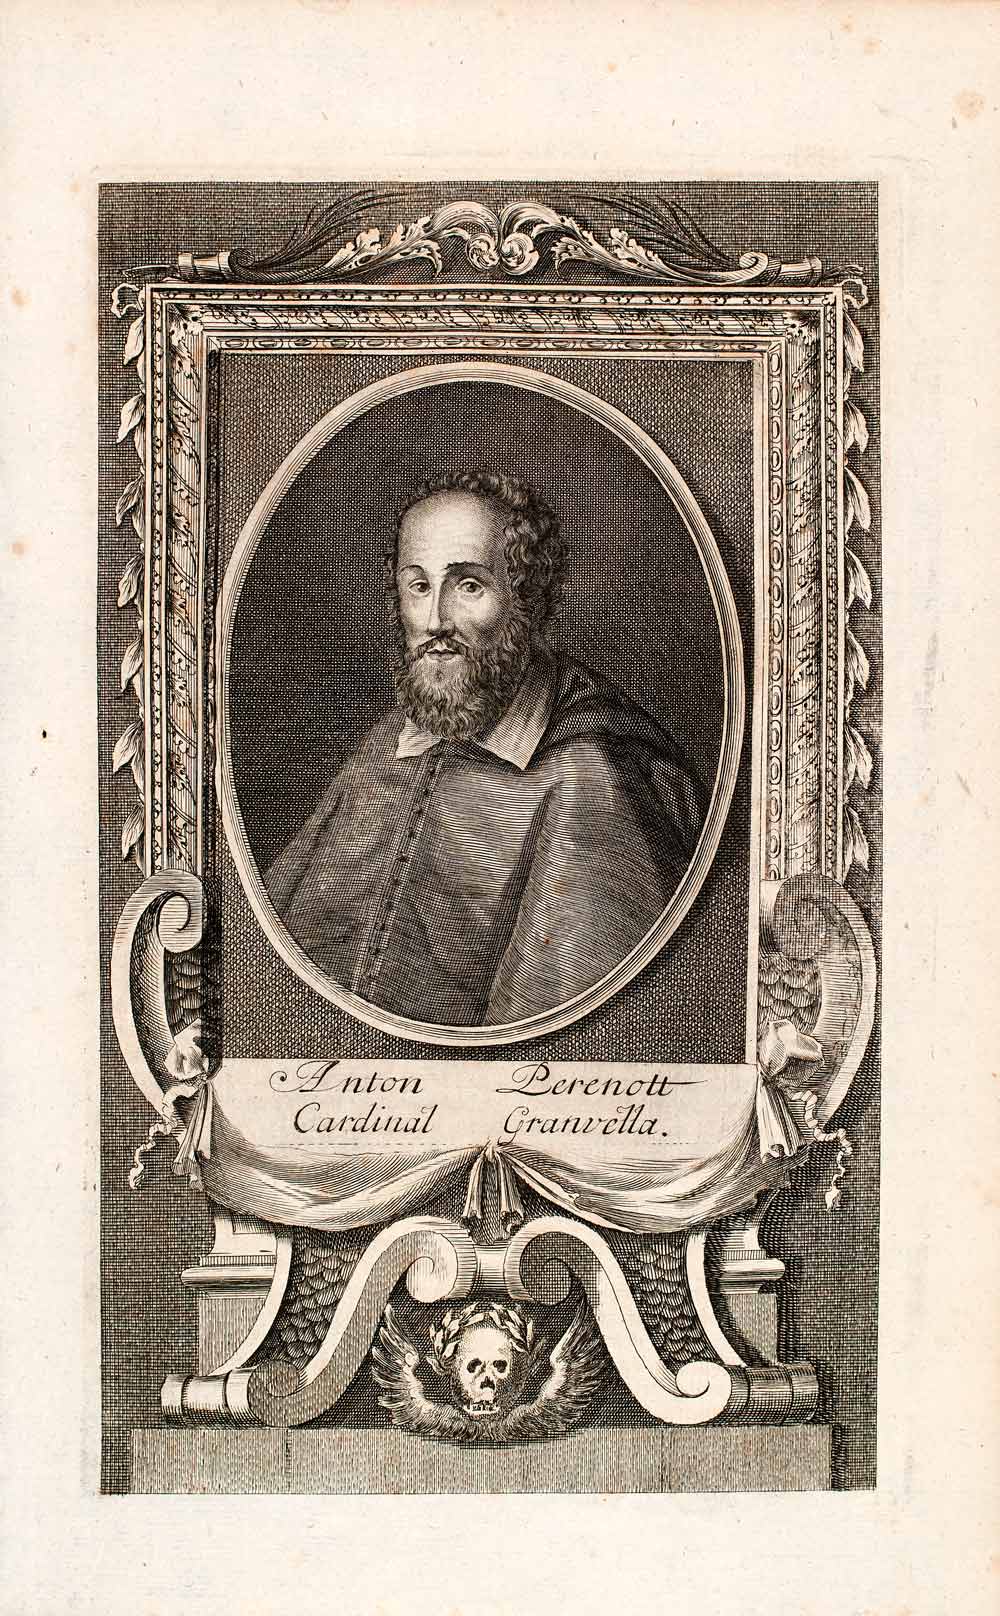 1721 Copper Engraving Portrait Antonius Perenottus Cardianl Counter EUM3